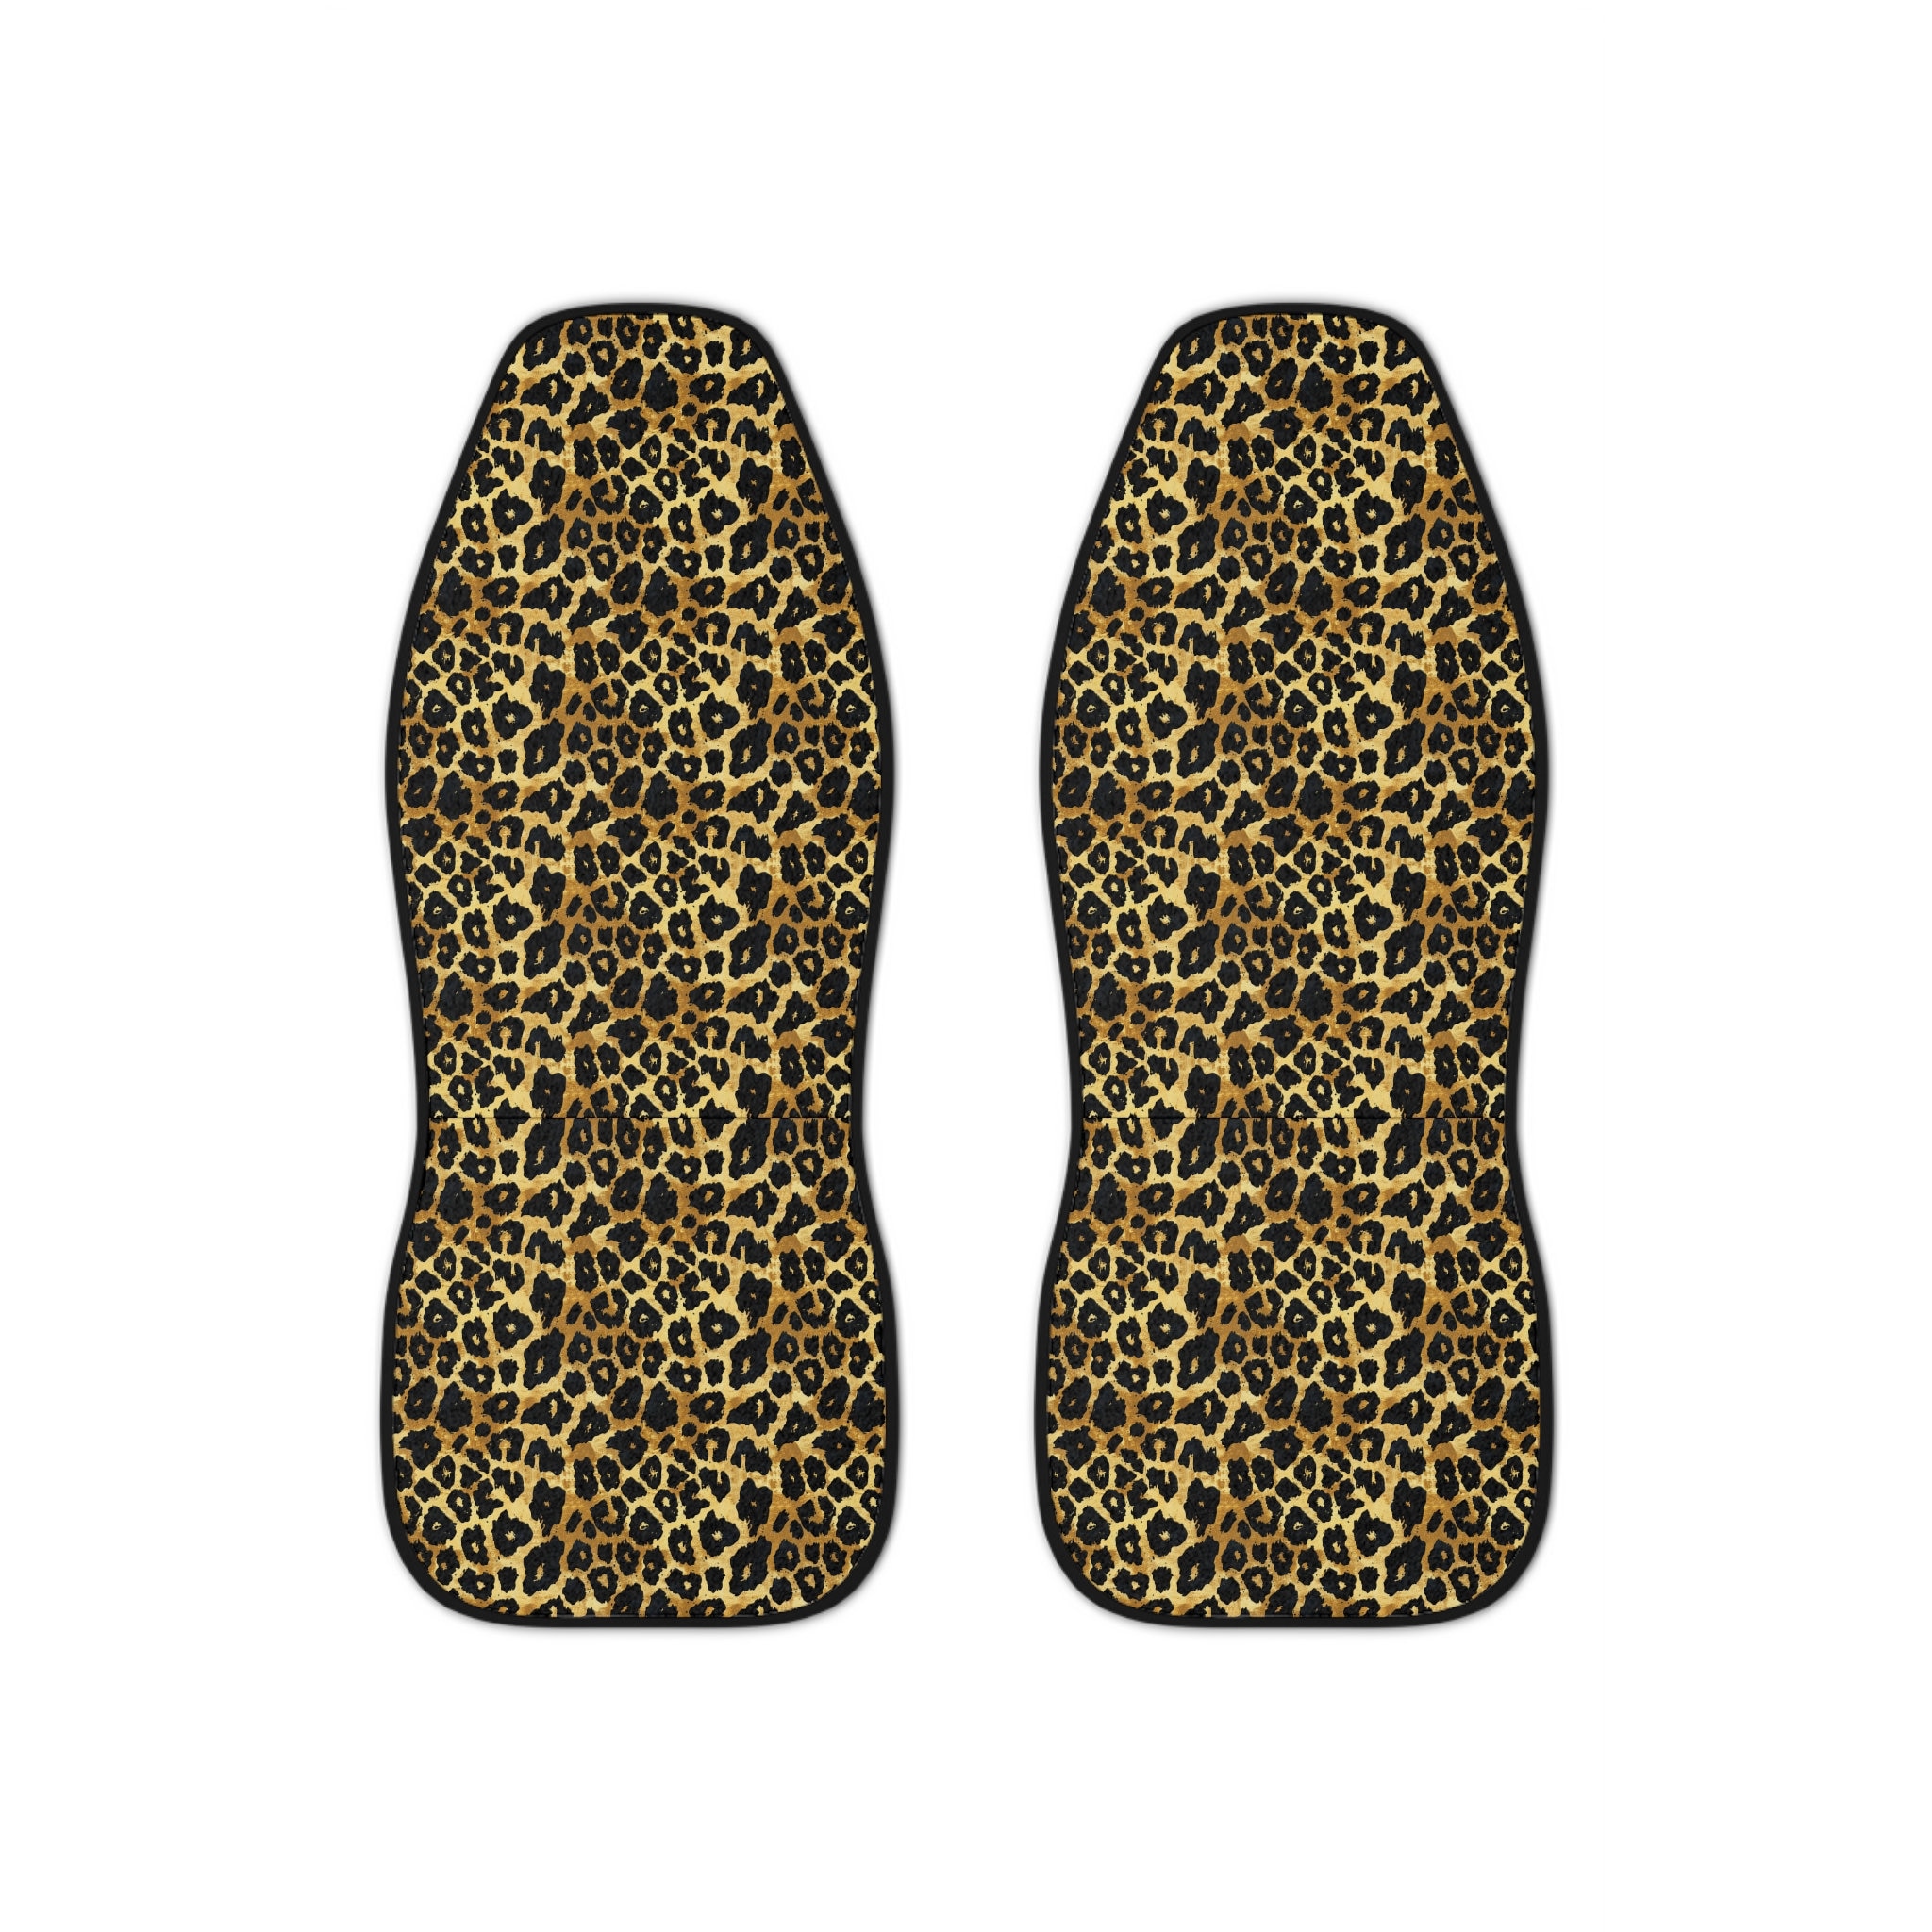 Cheetah Car Seat Covers, Cheetah Car Covers, Cheetah Seat Covers, Cute Interior Covers